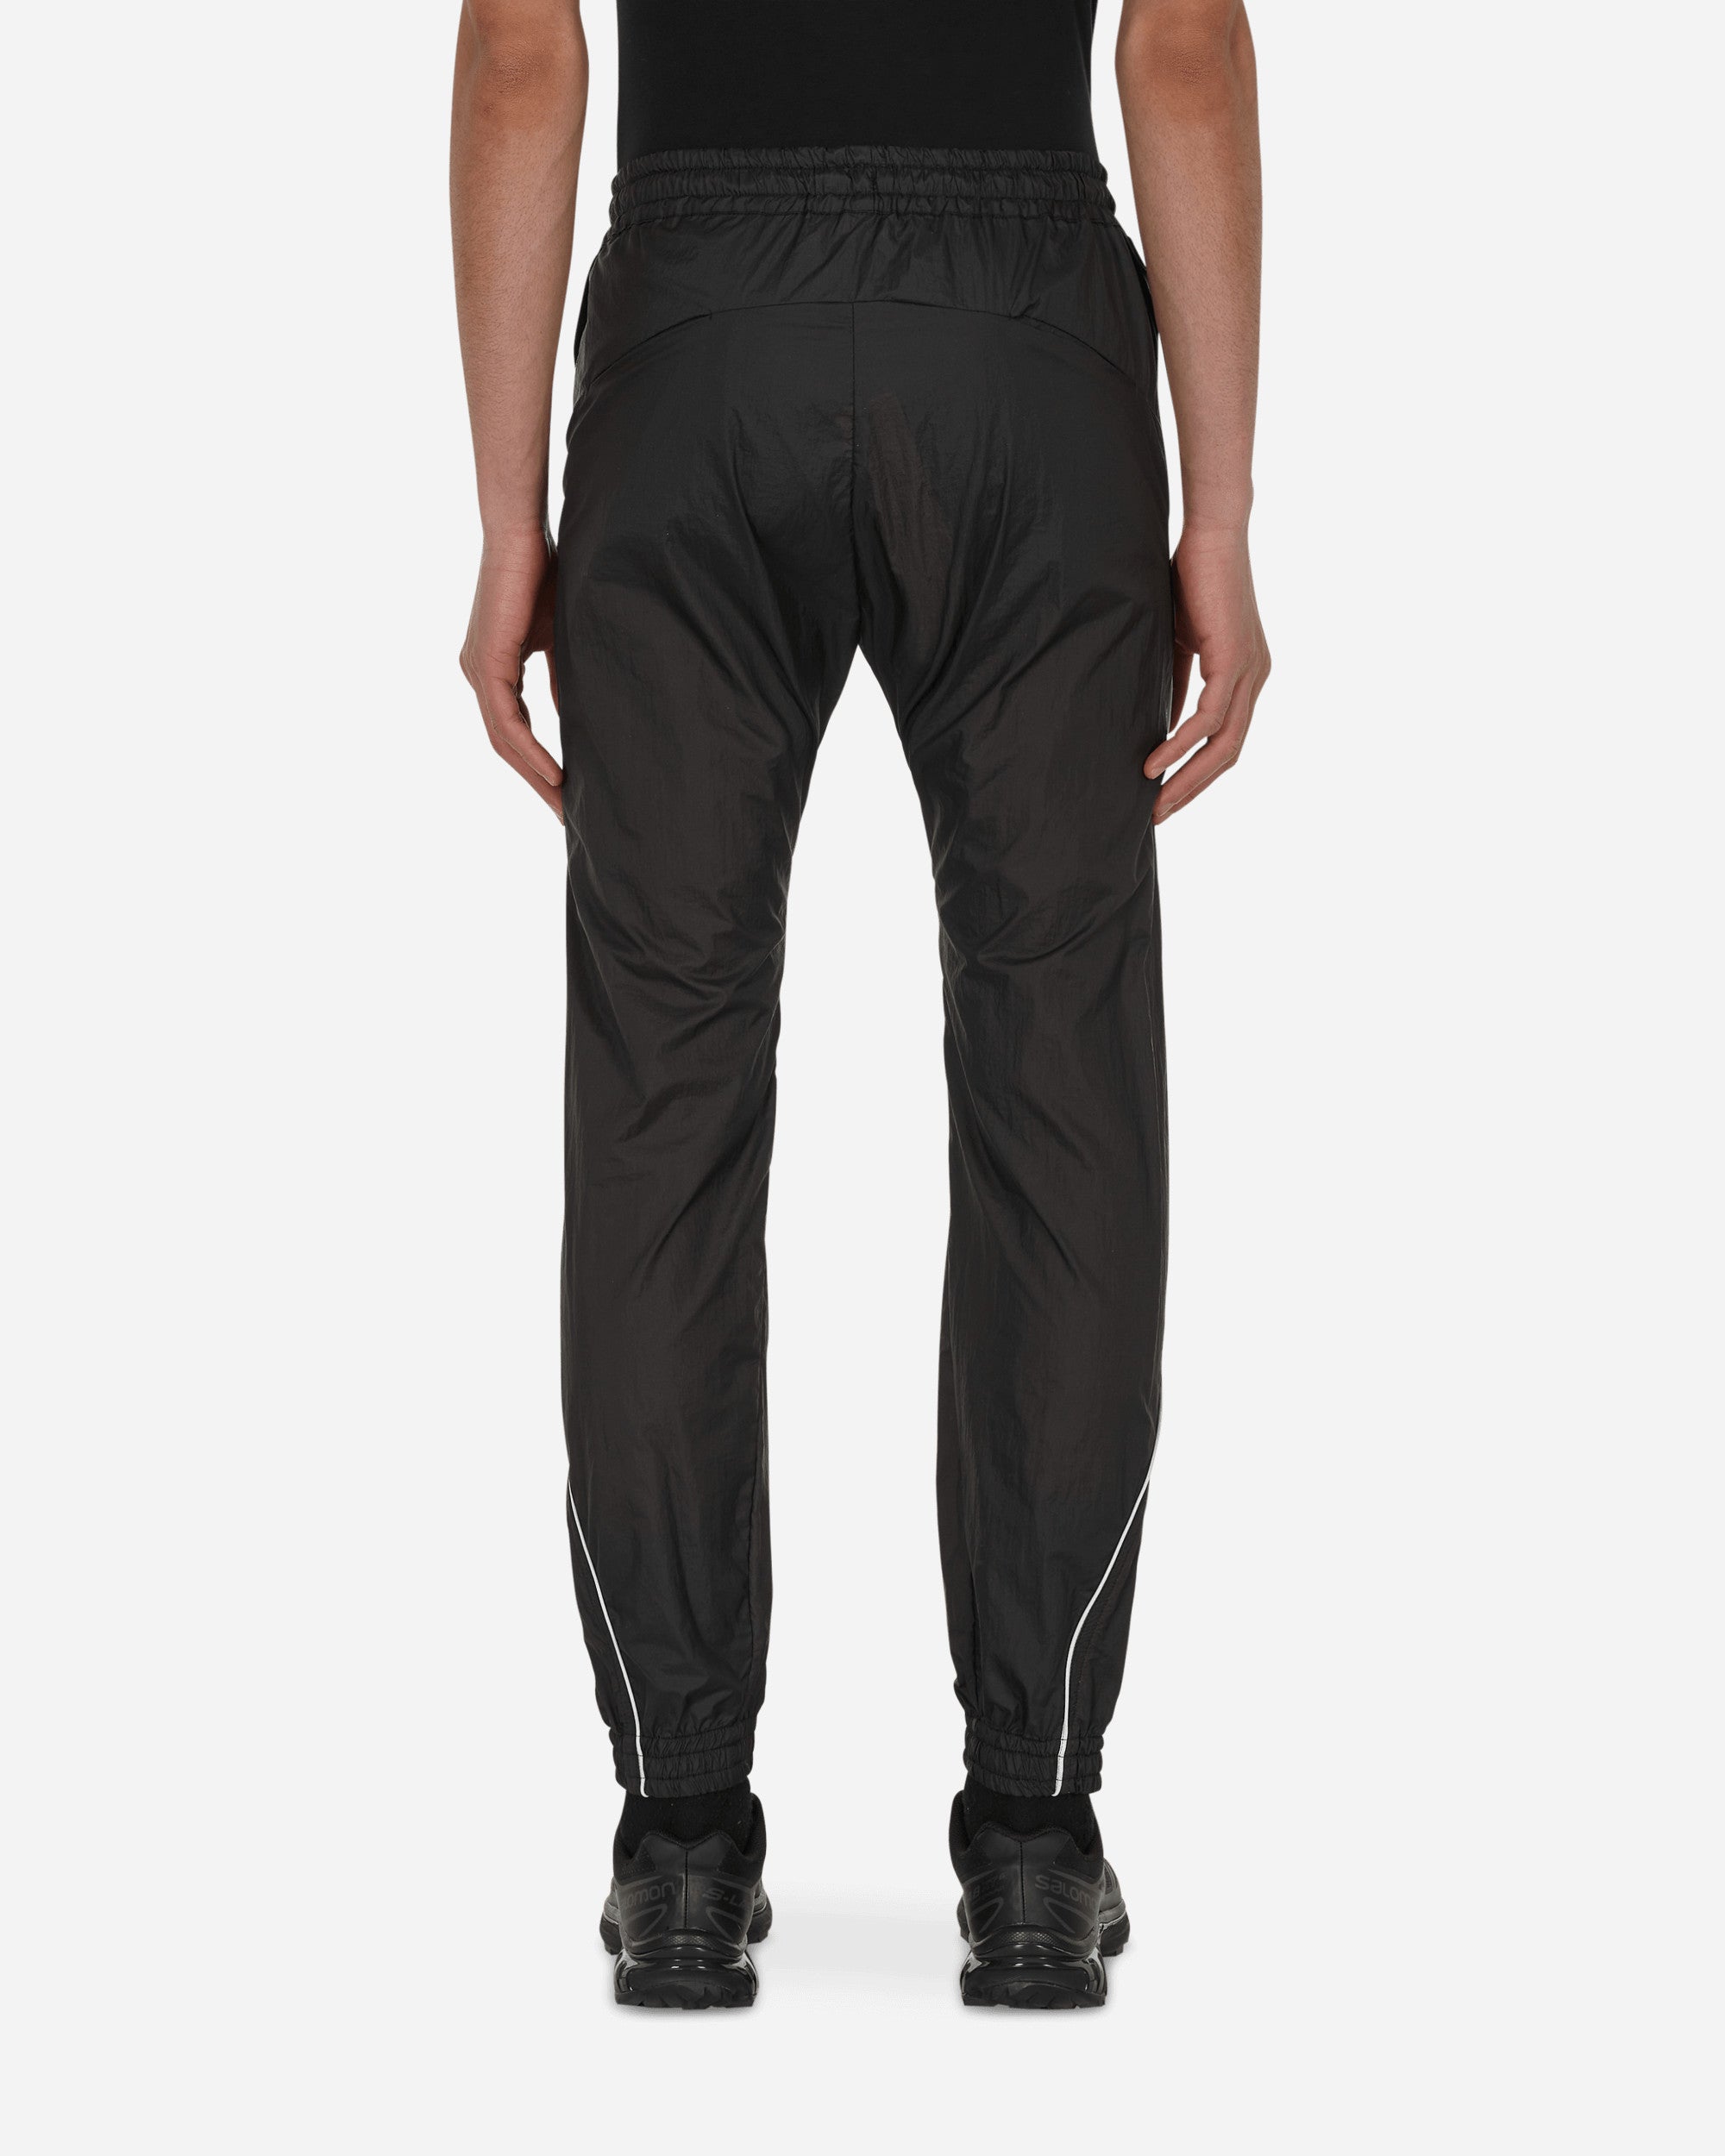 JordanLuca Baxter Pants Black Pants Trousers TTRK5103421001 BLACK